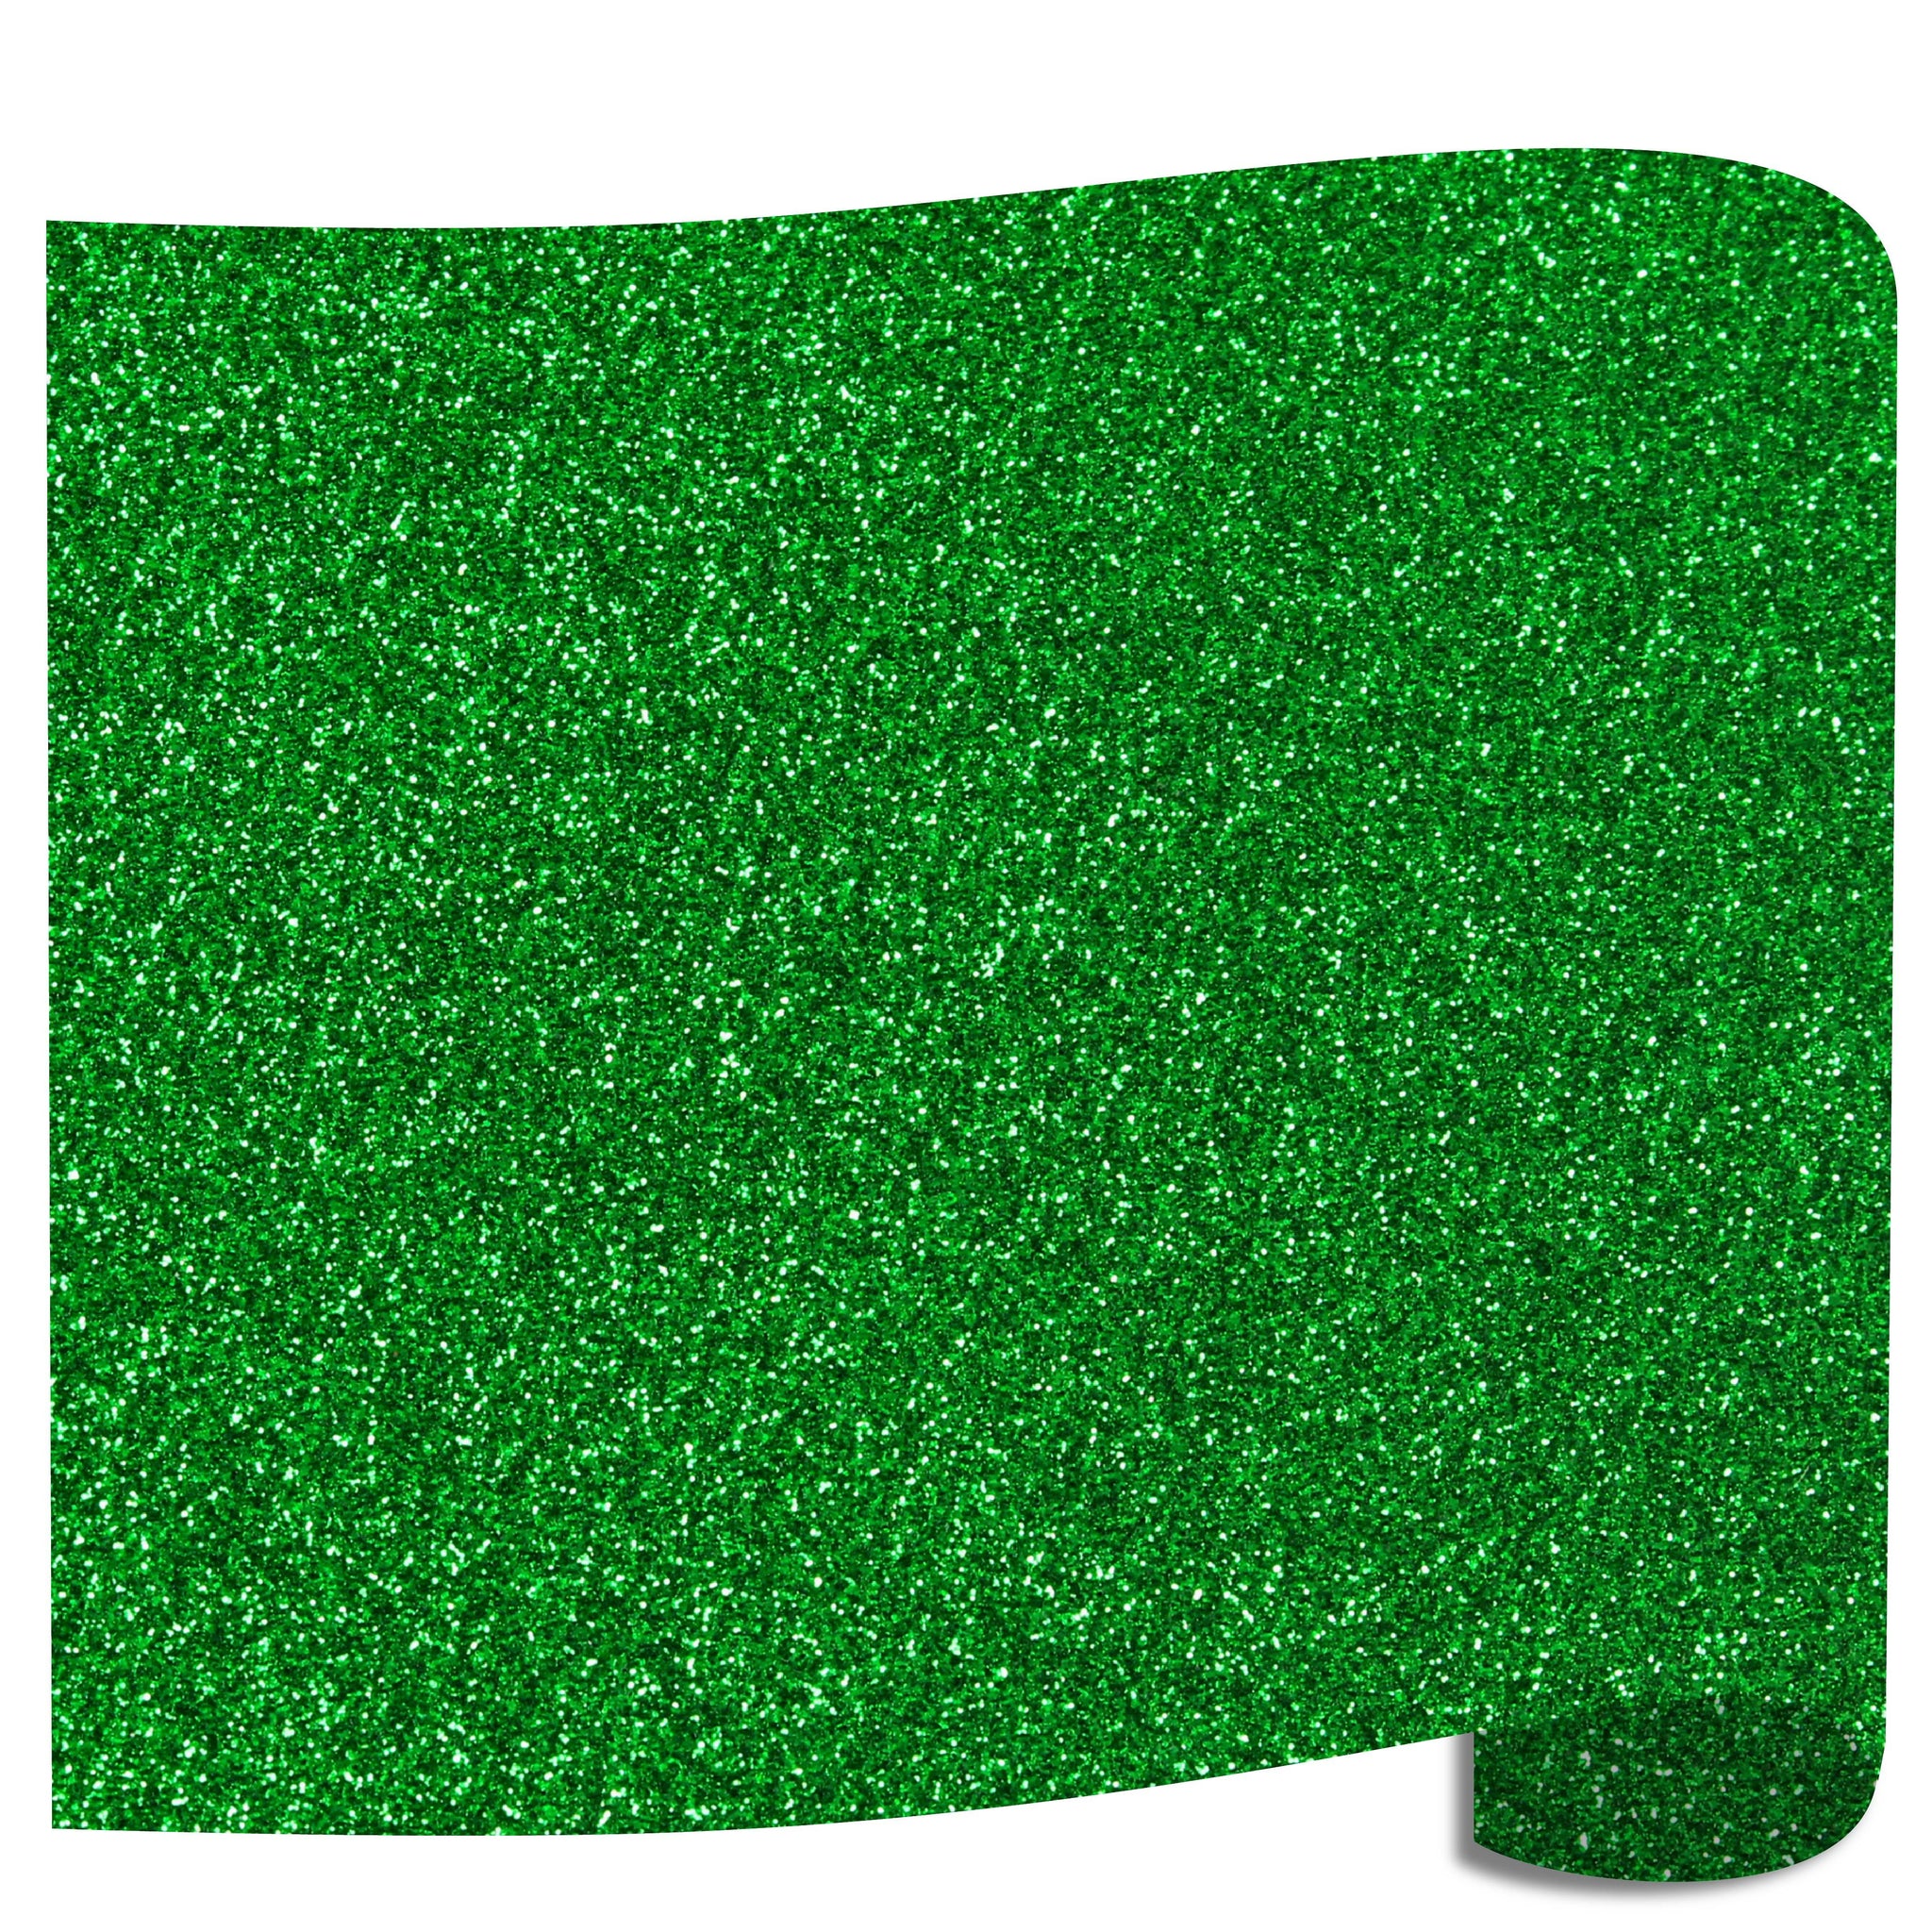 Siser Glitter Heat Transfer Vinyl (HTV) - Green (Grass)